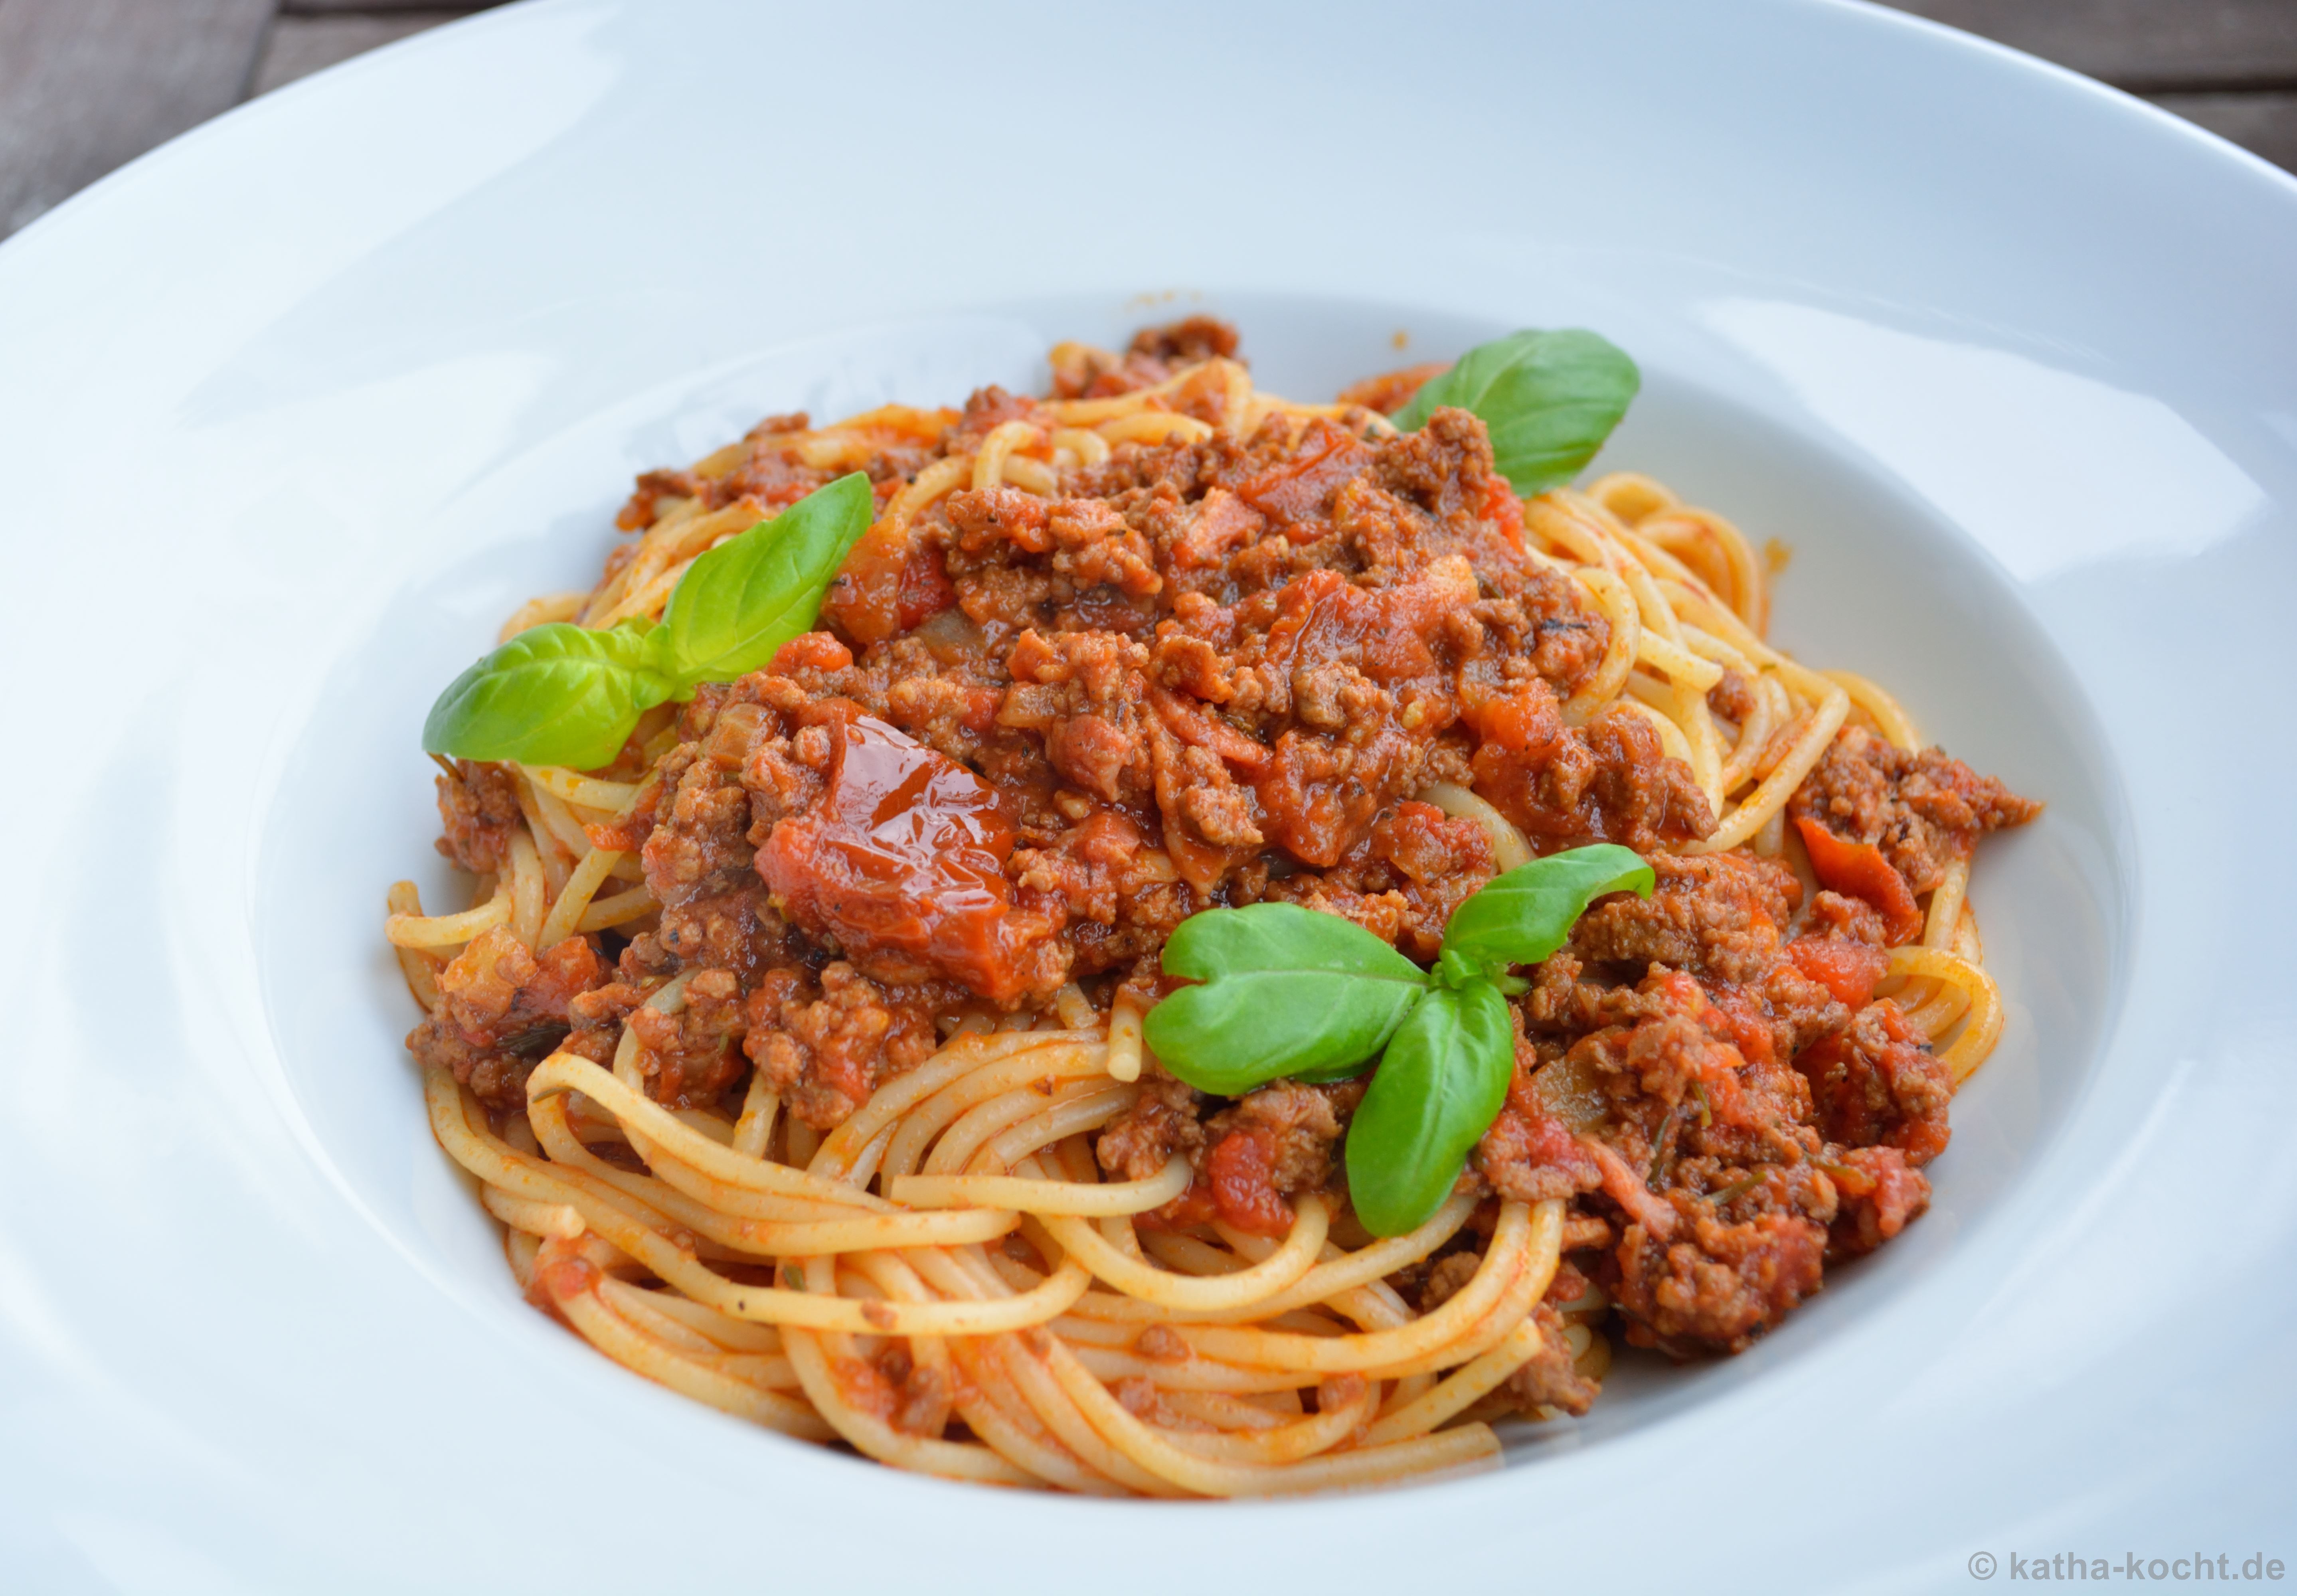 Spaghetti Bolognese - Katha-kocht!